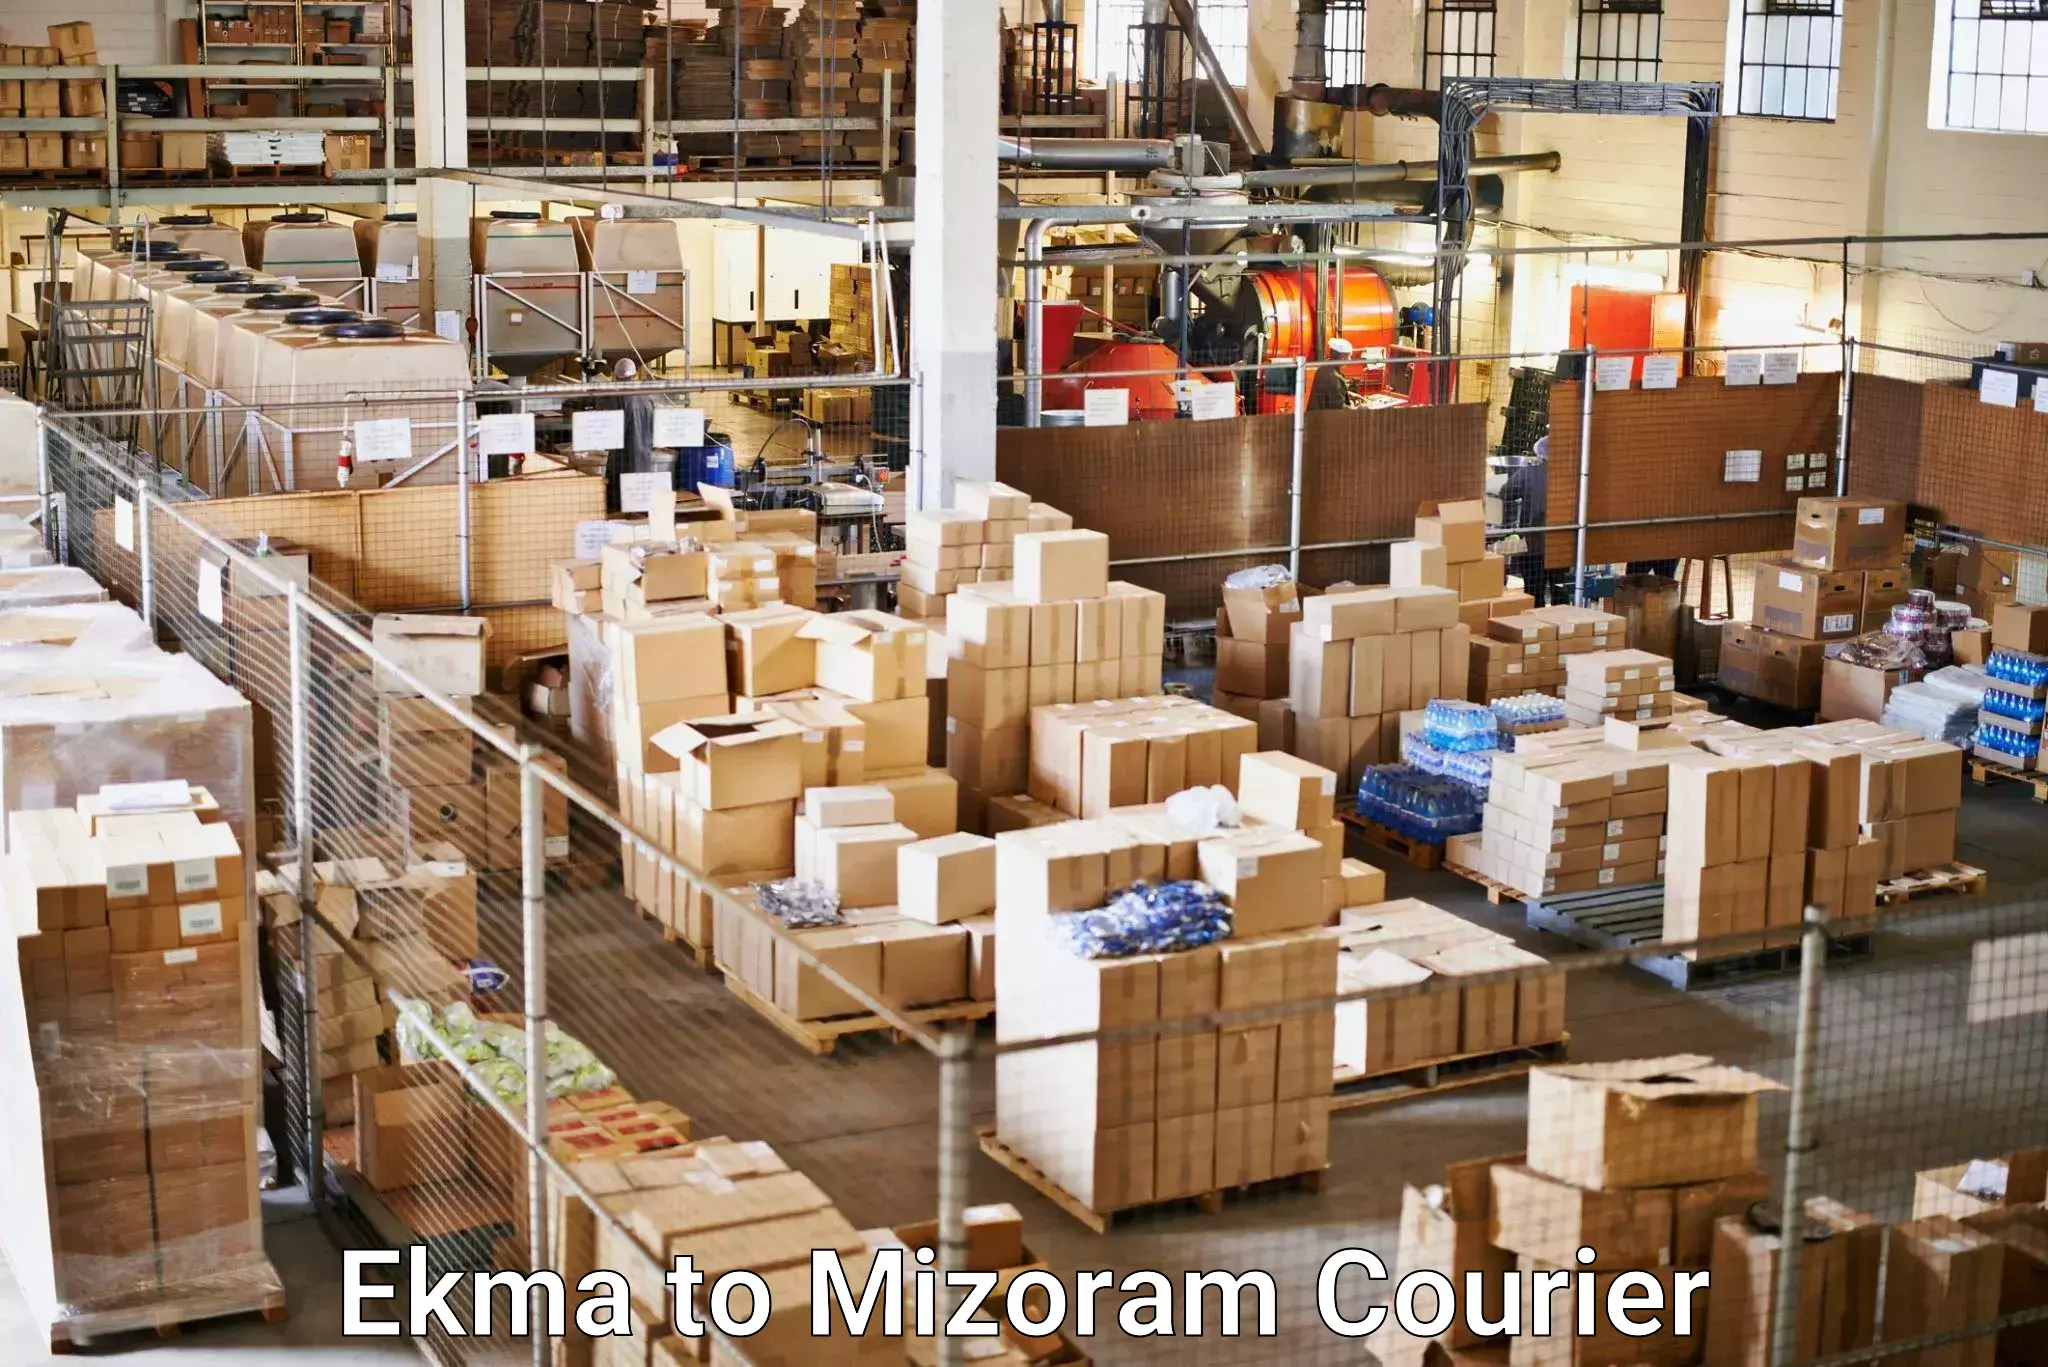 Courier service comparison Ekma to Mizoram